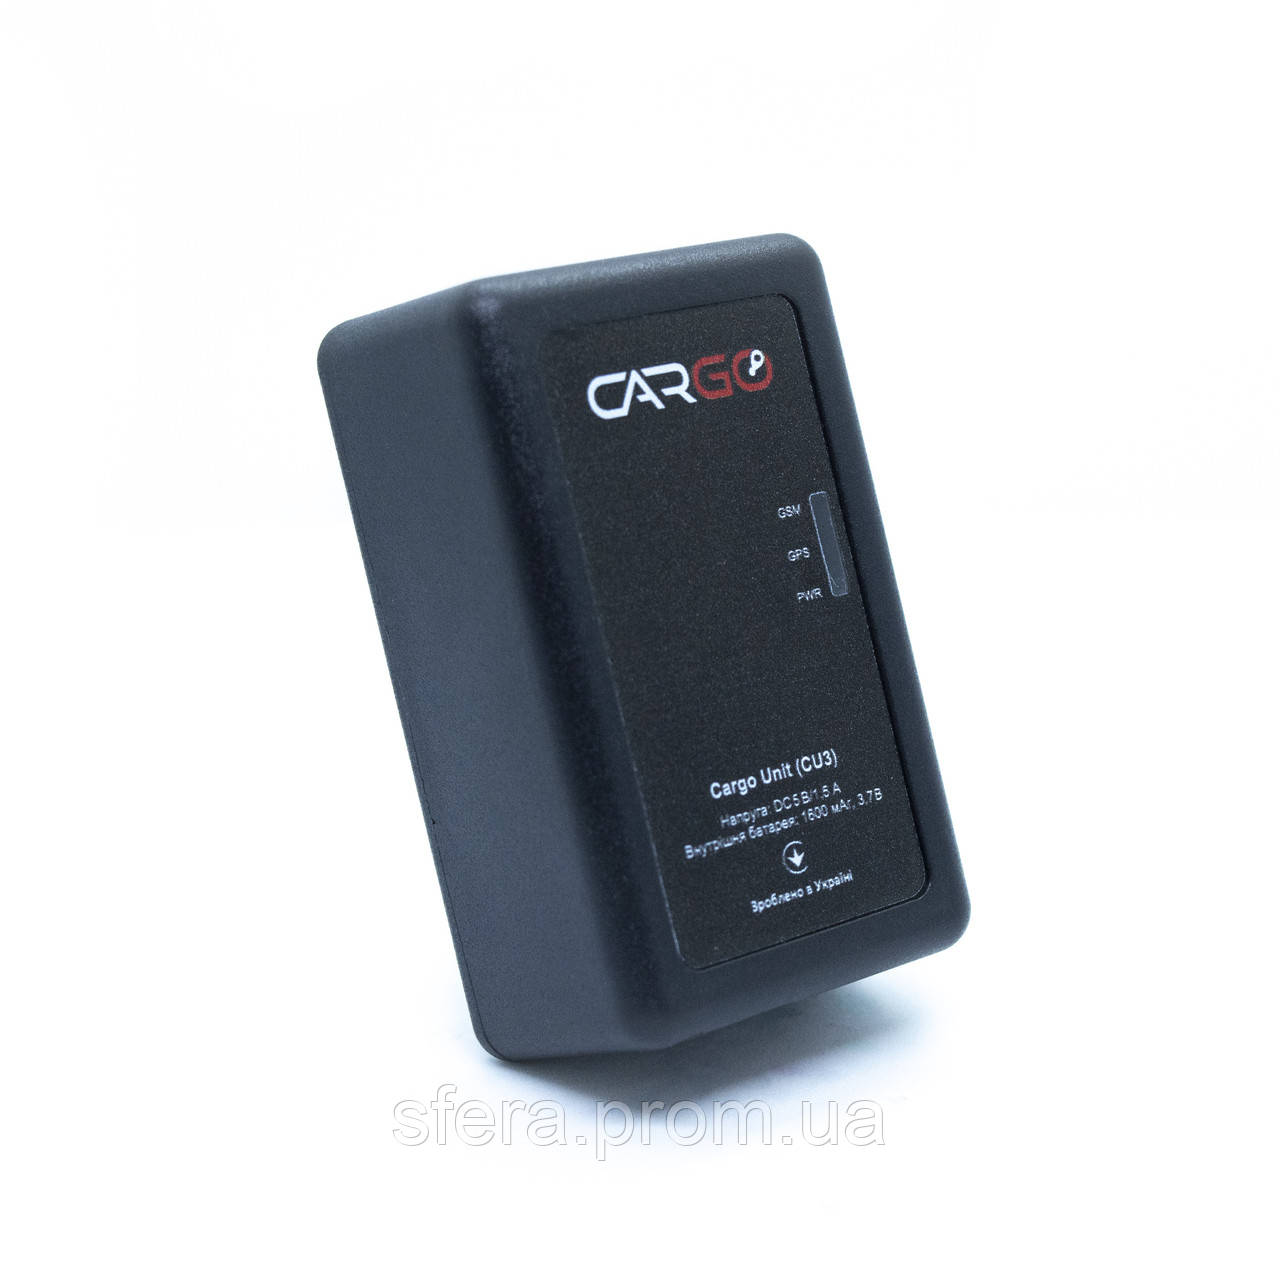 Автономний GPS трекер закладка/маяк Cargo Unit CU3 (SIM + Безкоштовний додаток)